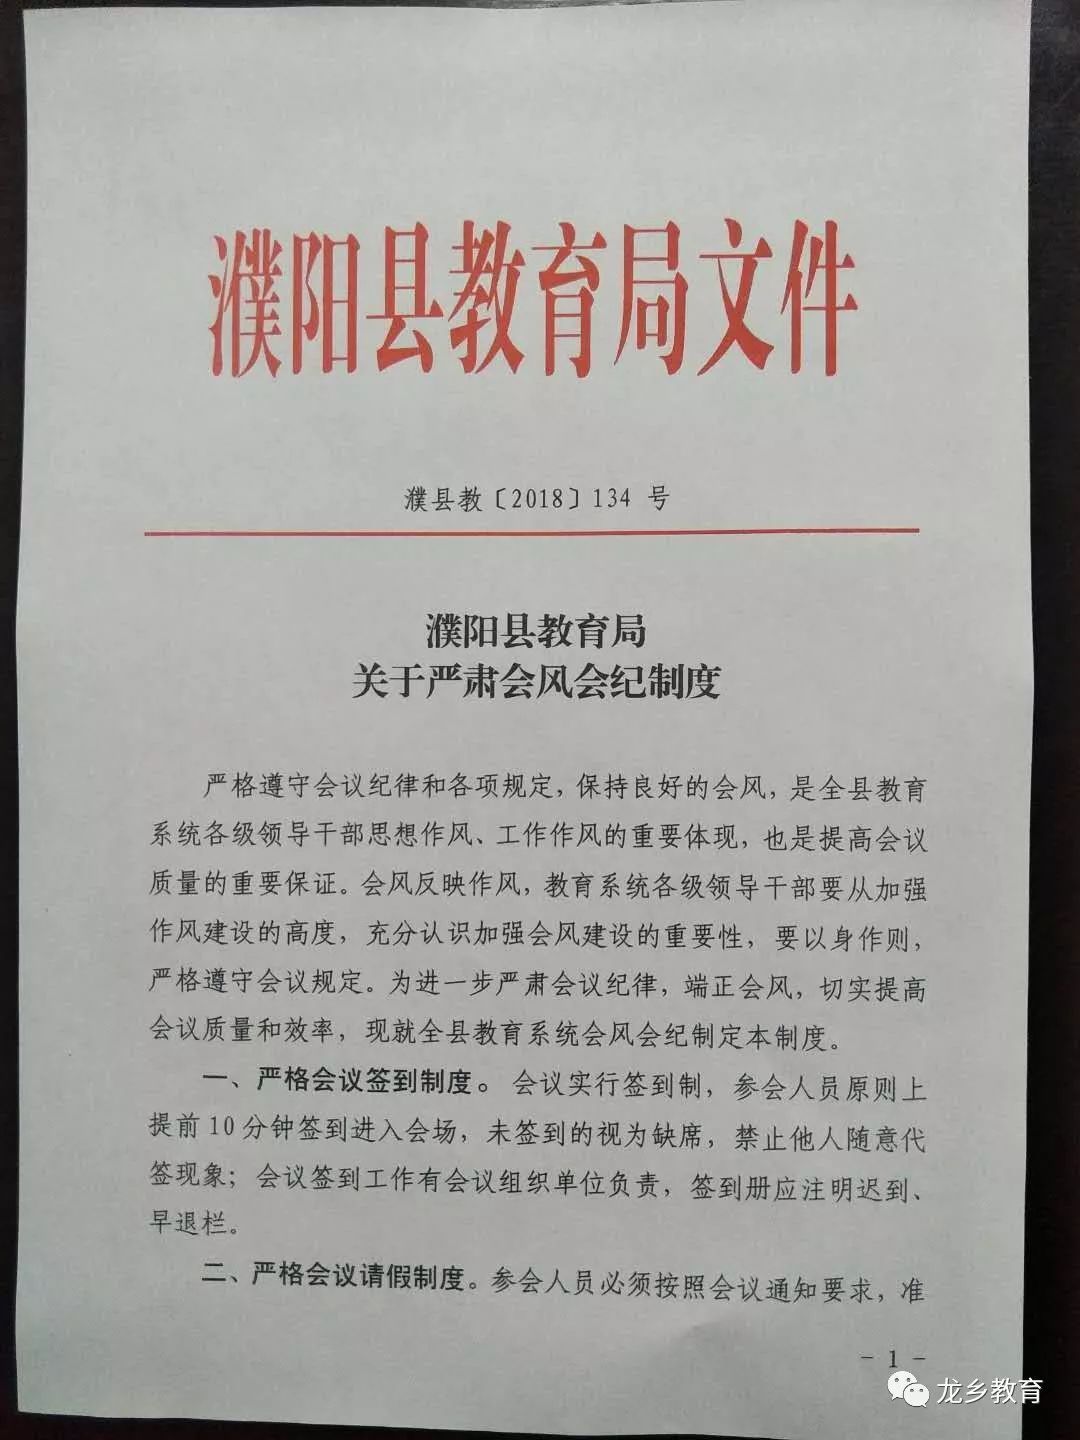 濮阳县教育局:关于严肃会风会纪制度